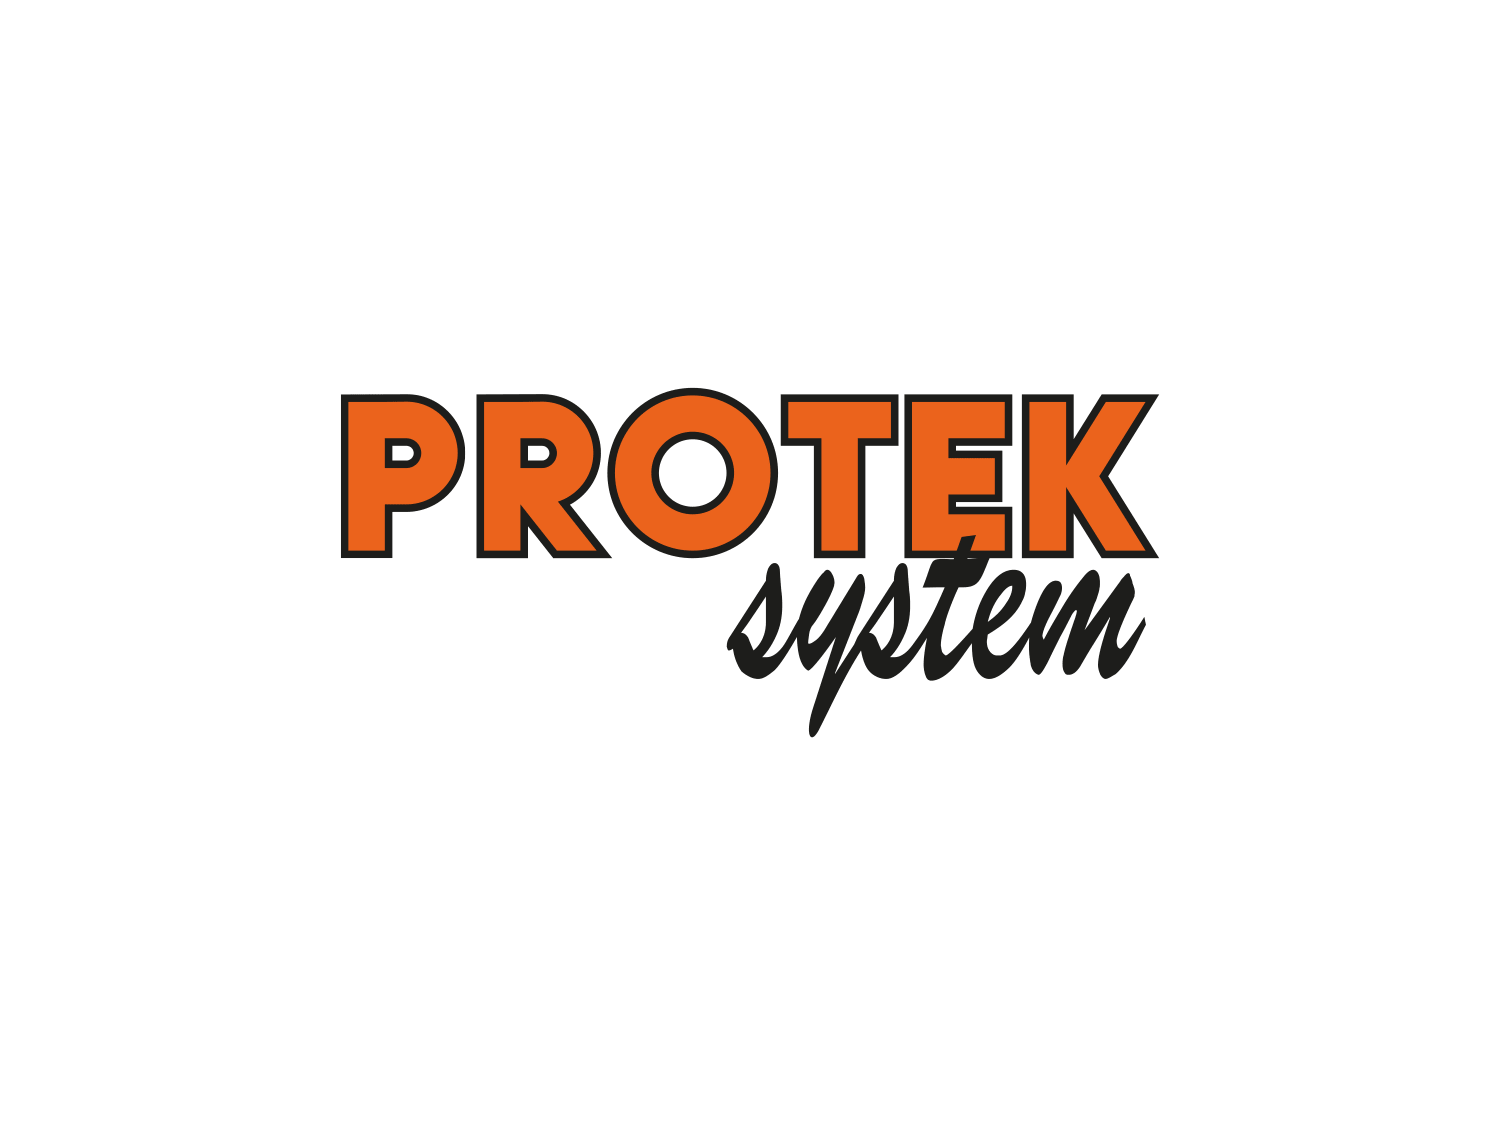 (c) Protek-system.pl